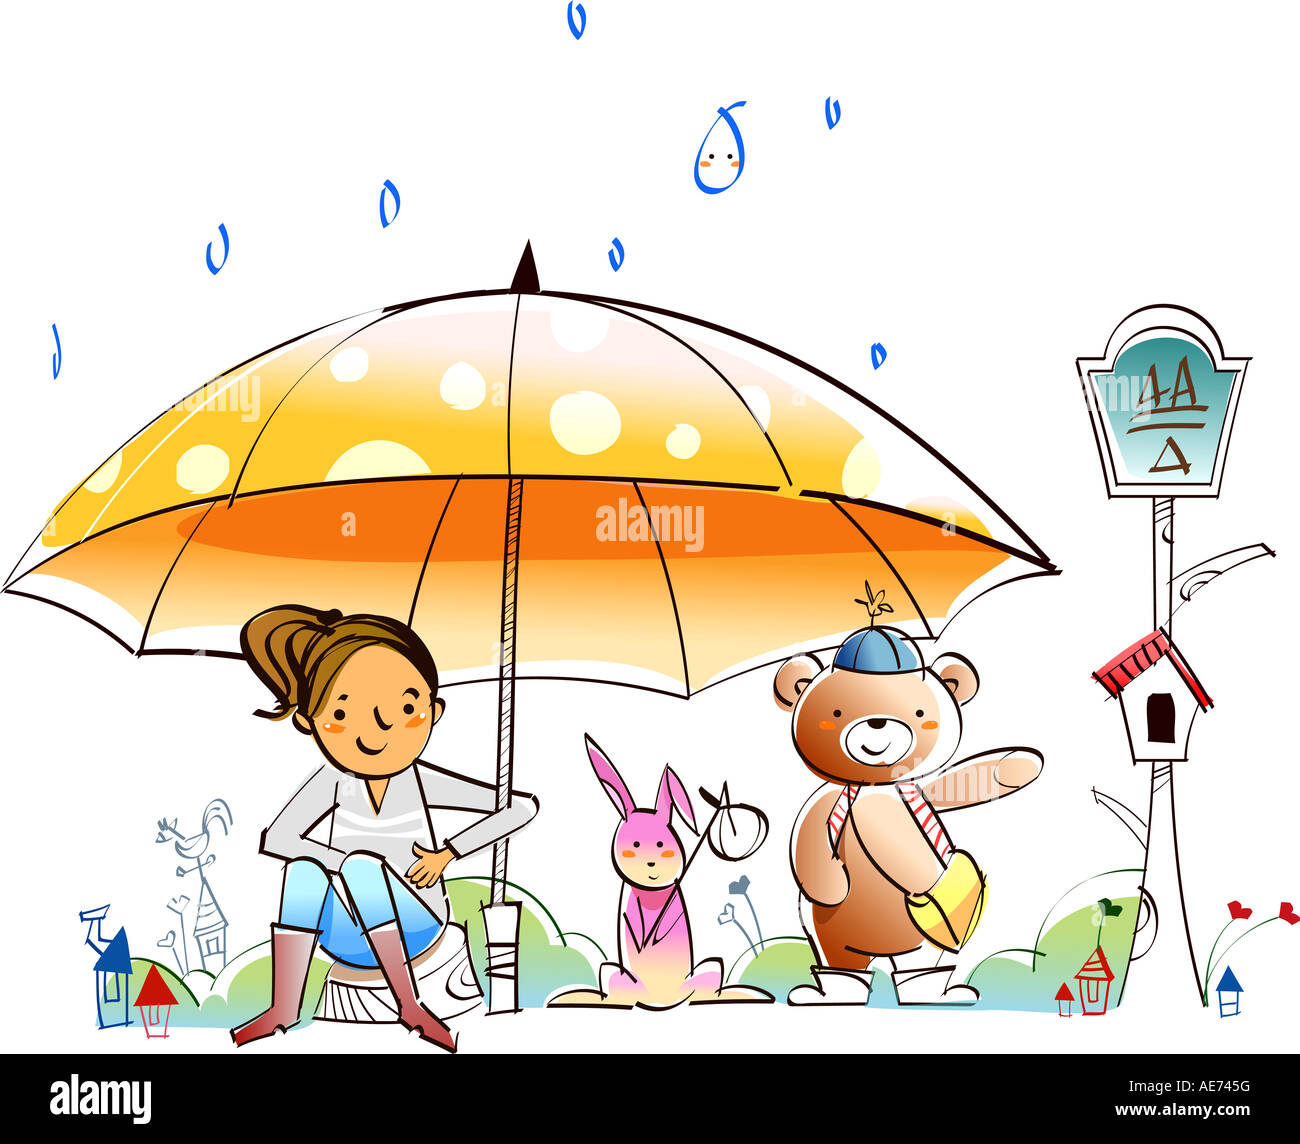 Зонтик добра. Семья под зонтом. Под зонтиком. Веселый зонтик. Зонтик для детей.